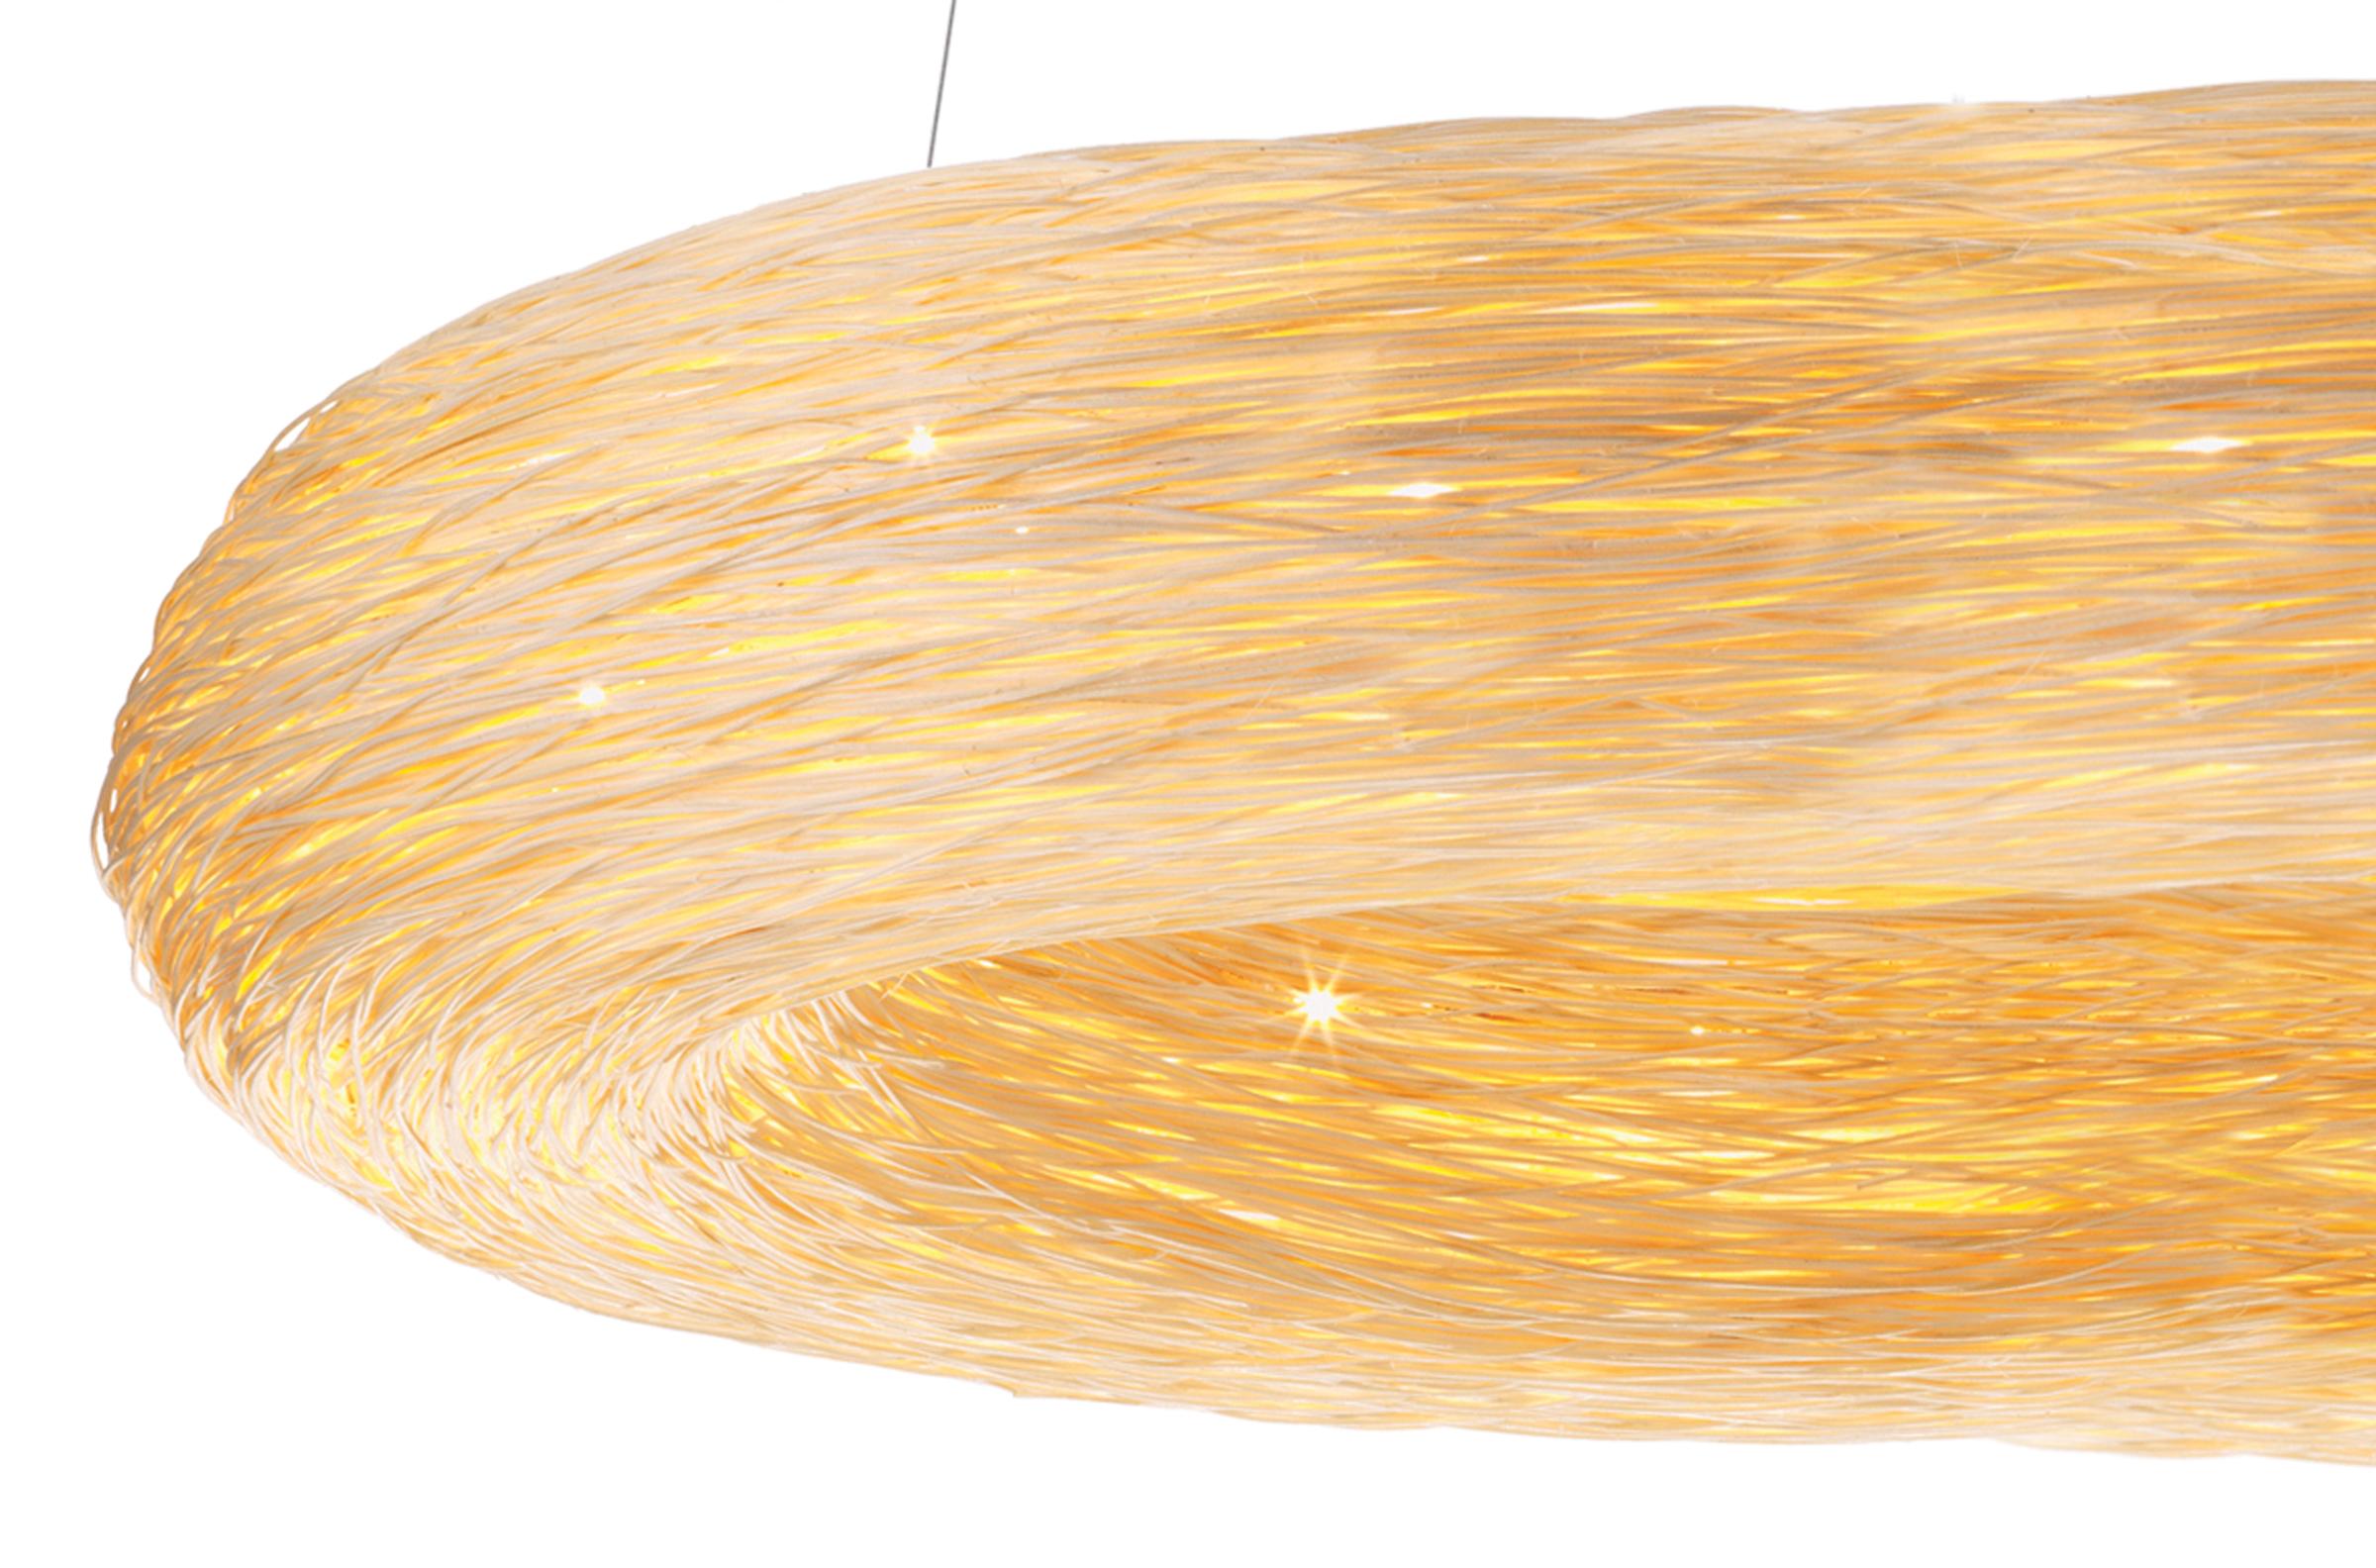 Yellow Crown 1100 est un anneau lumineux en rotin fabriqué à la main. Il fait partie d'une nouvelle génération d'éclairage conçue par Ango qui explore la magie des matériaux naturels combinés à la technologie des lampes LED. Le design reprend la